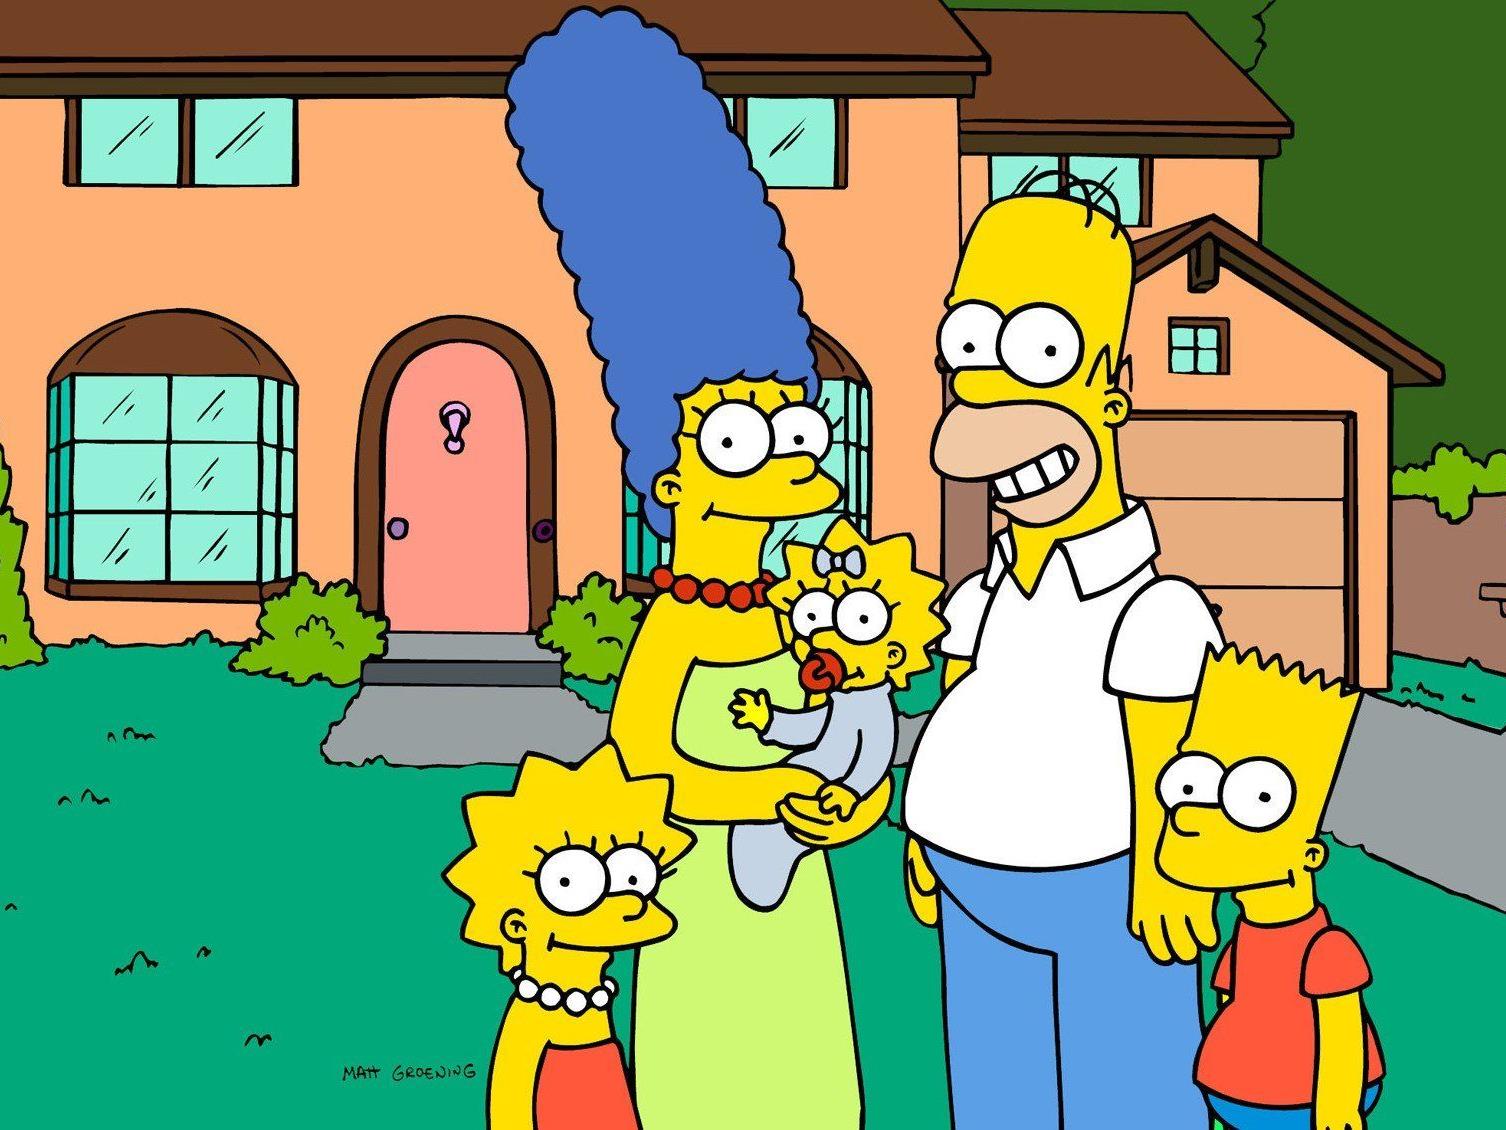 Am 17. Dezember feiern "Die Simpsons" ihr Bildschirm-Jubiläum in den USA.